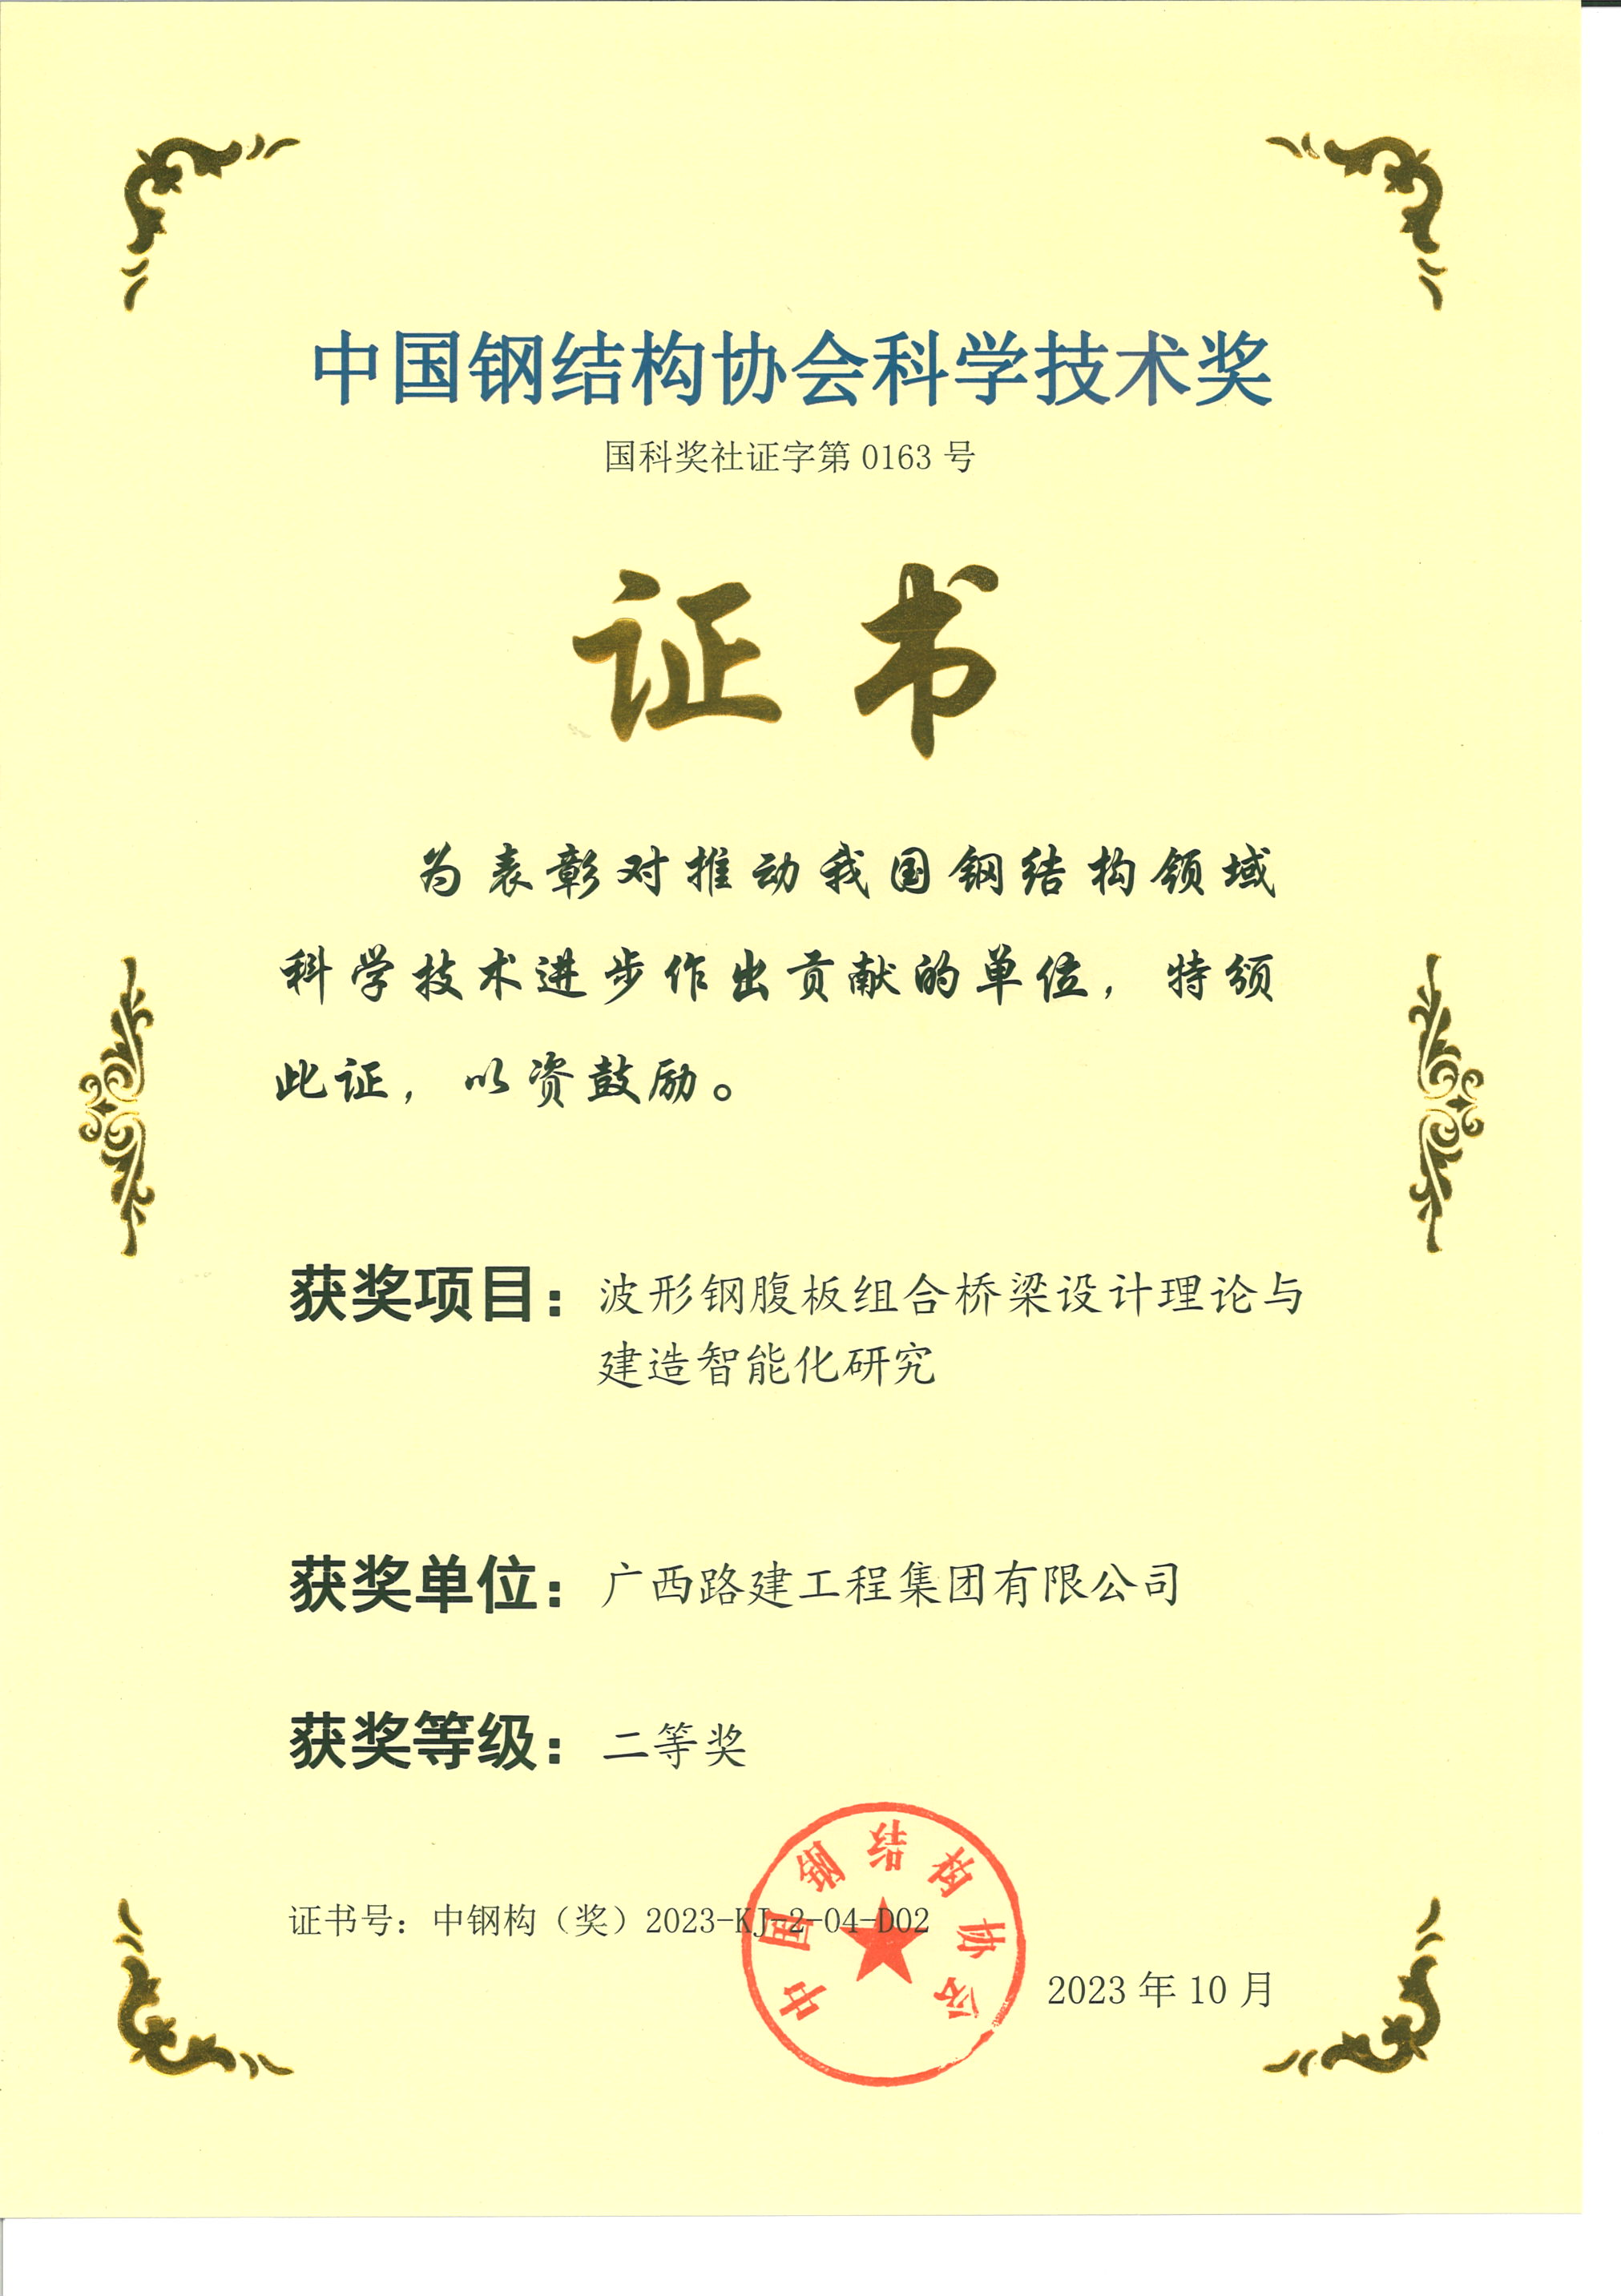 8. 中国钢结构协会科学技术奖.png